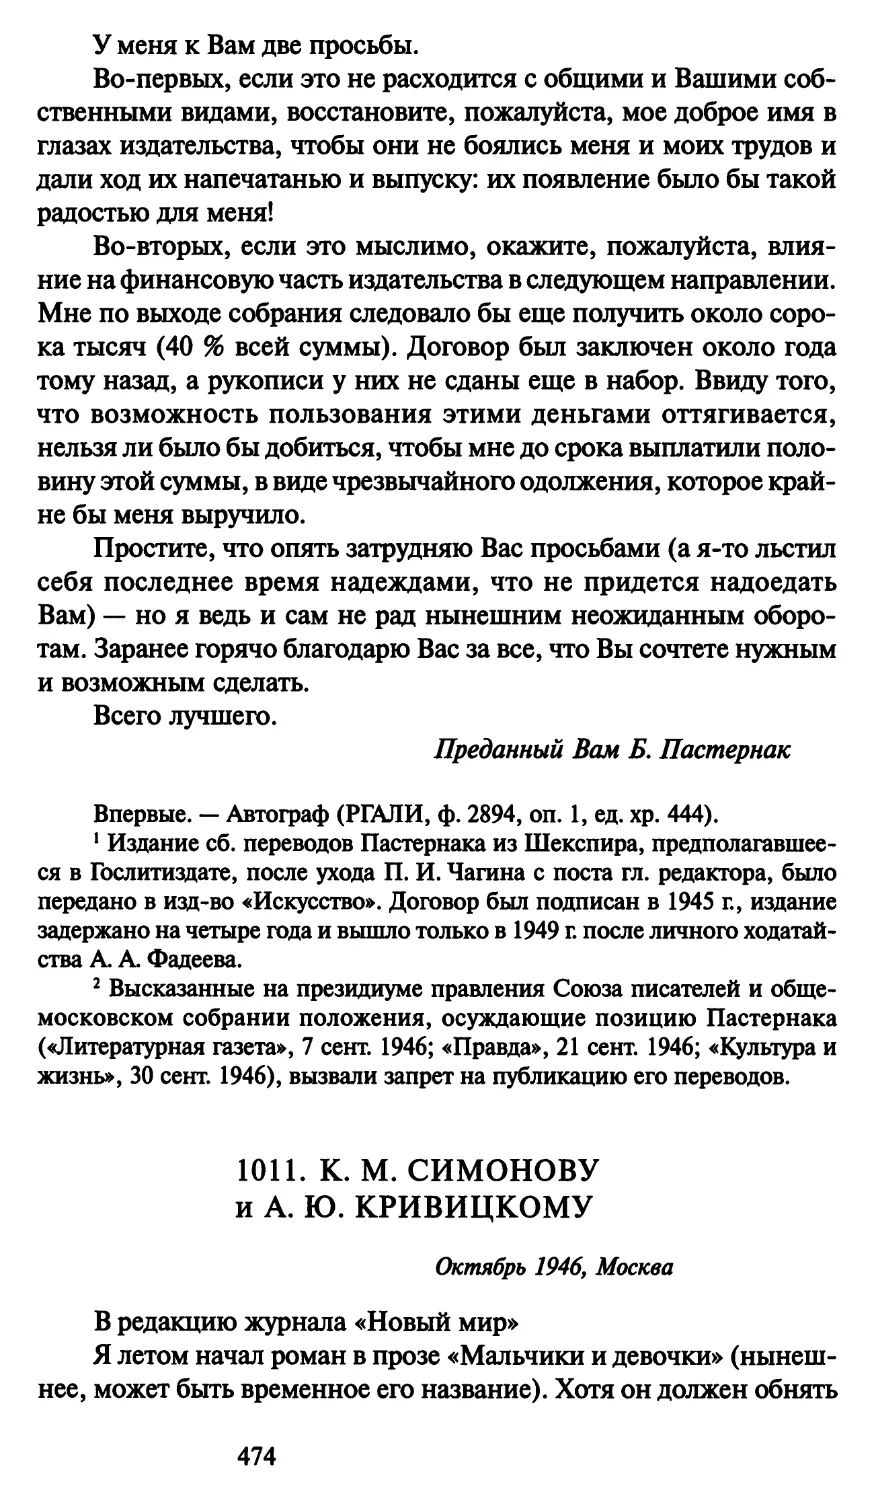 1011. К. М. Симонову и А. Ю. Кривицкому октябрь 1946